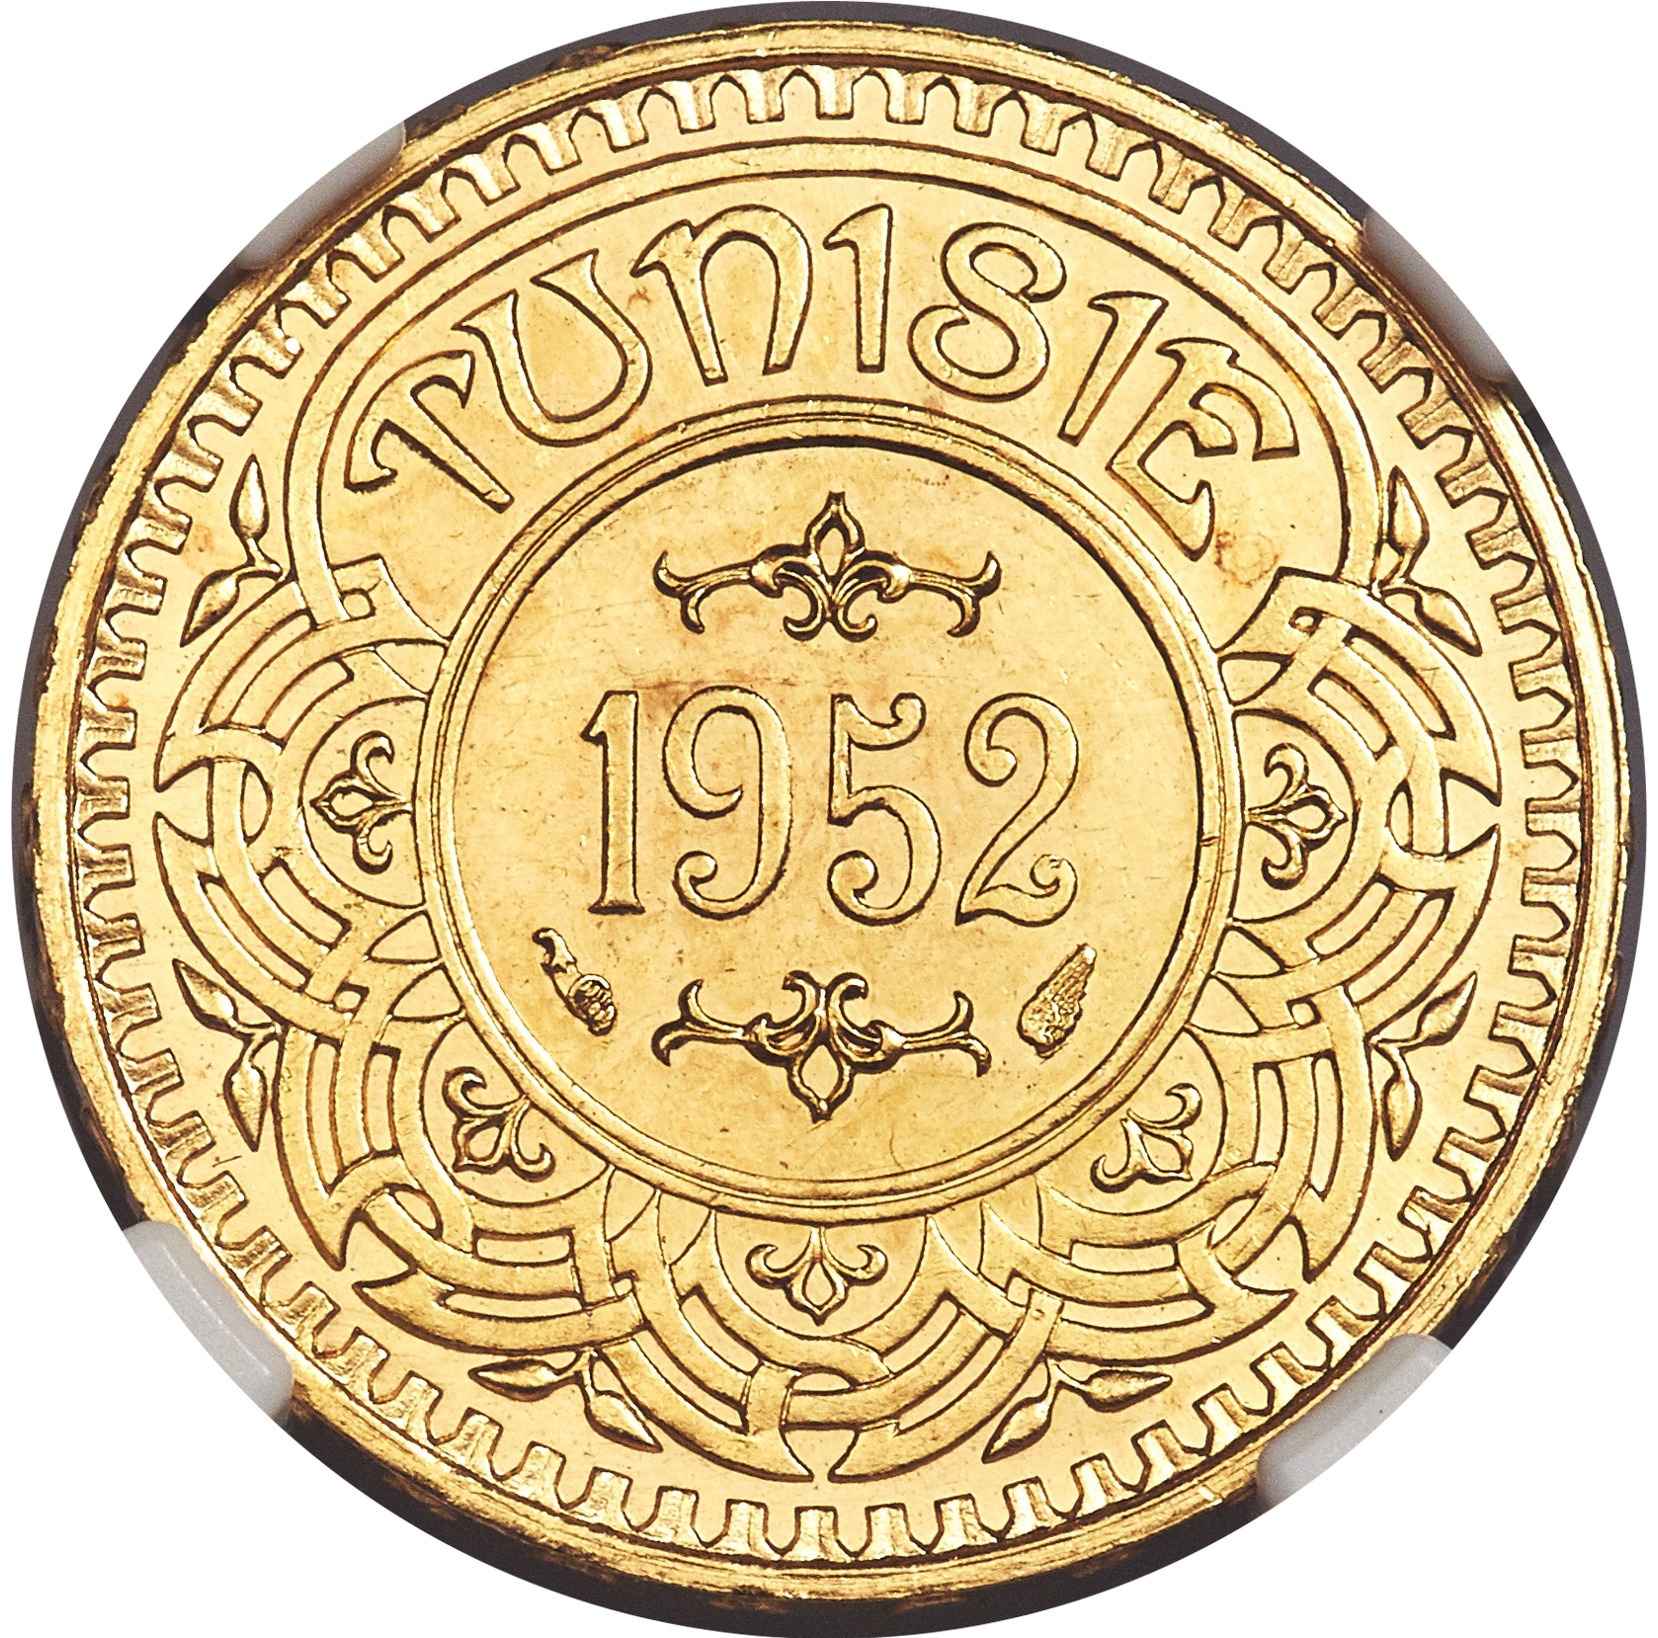 1952 Tunisia 100FR Obv.jpg